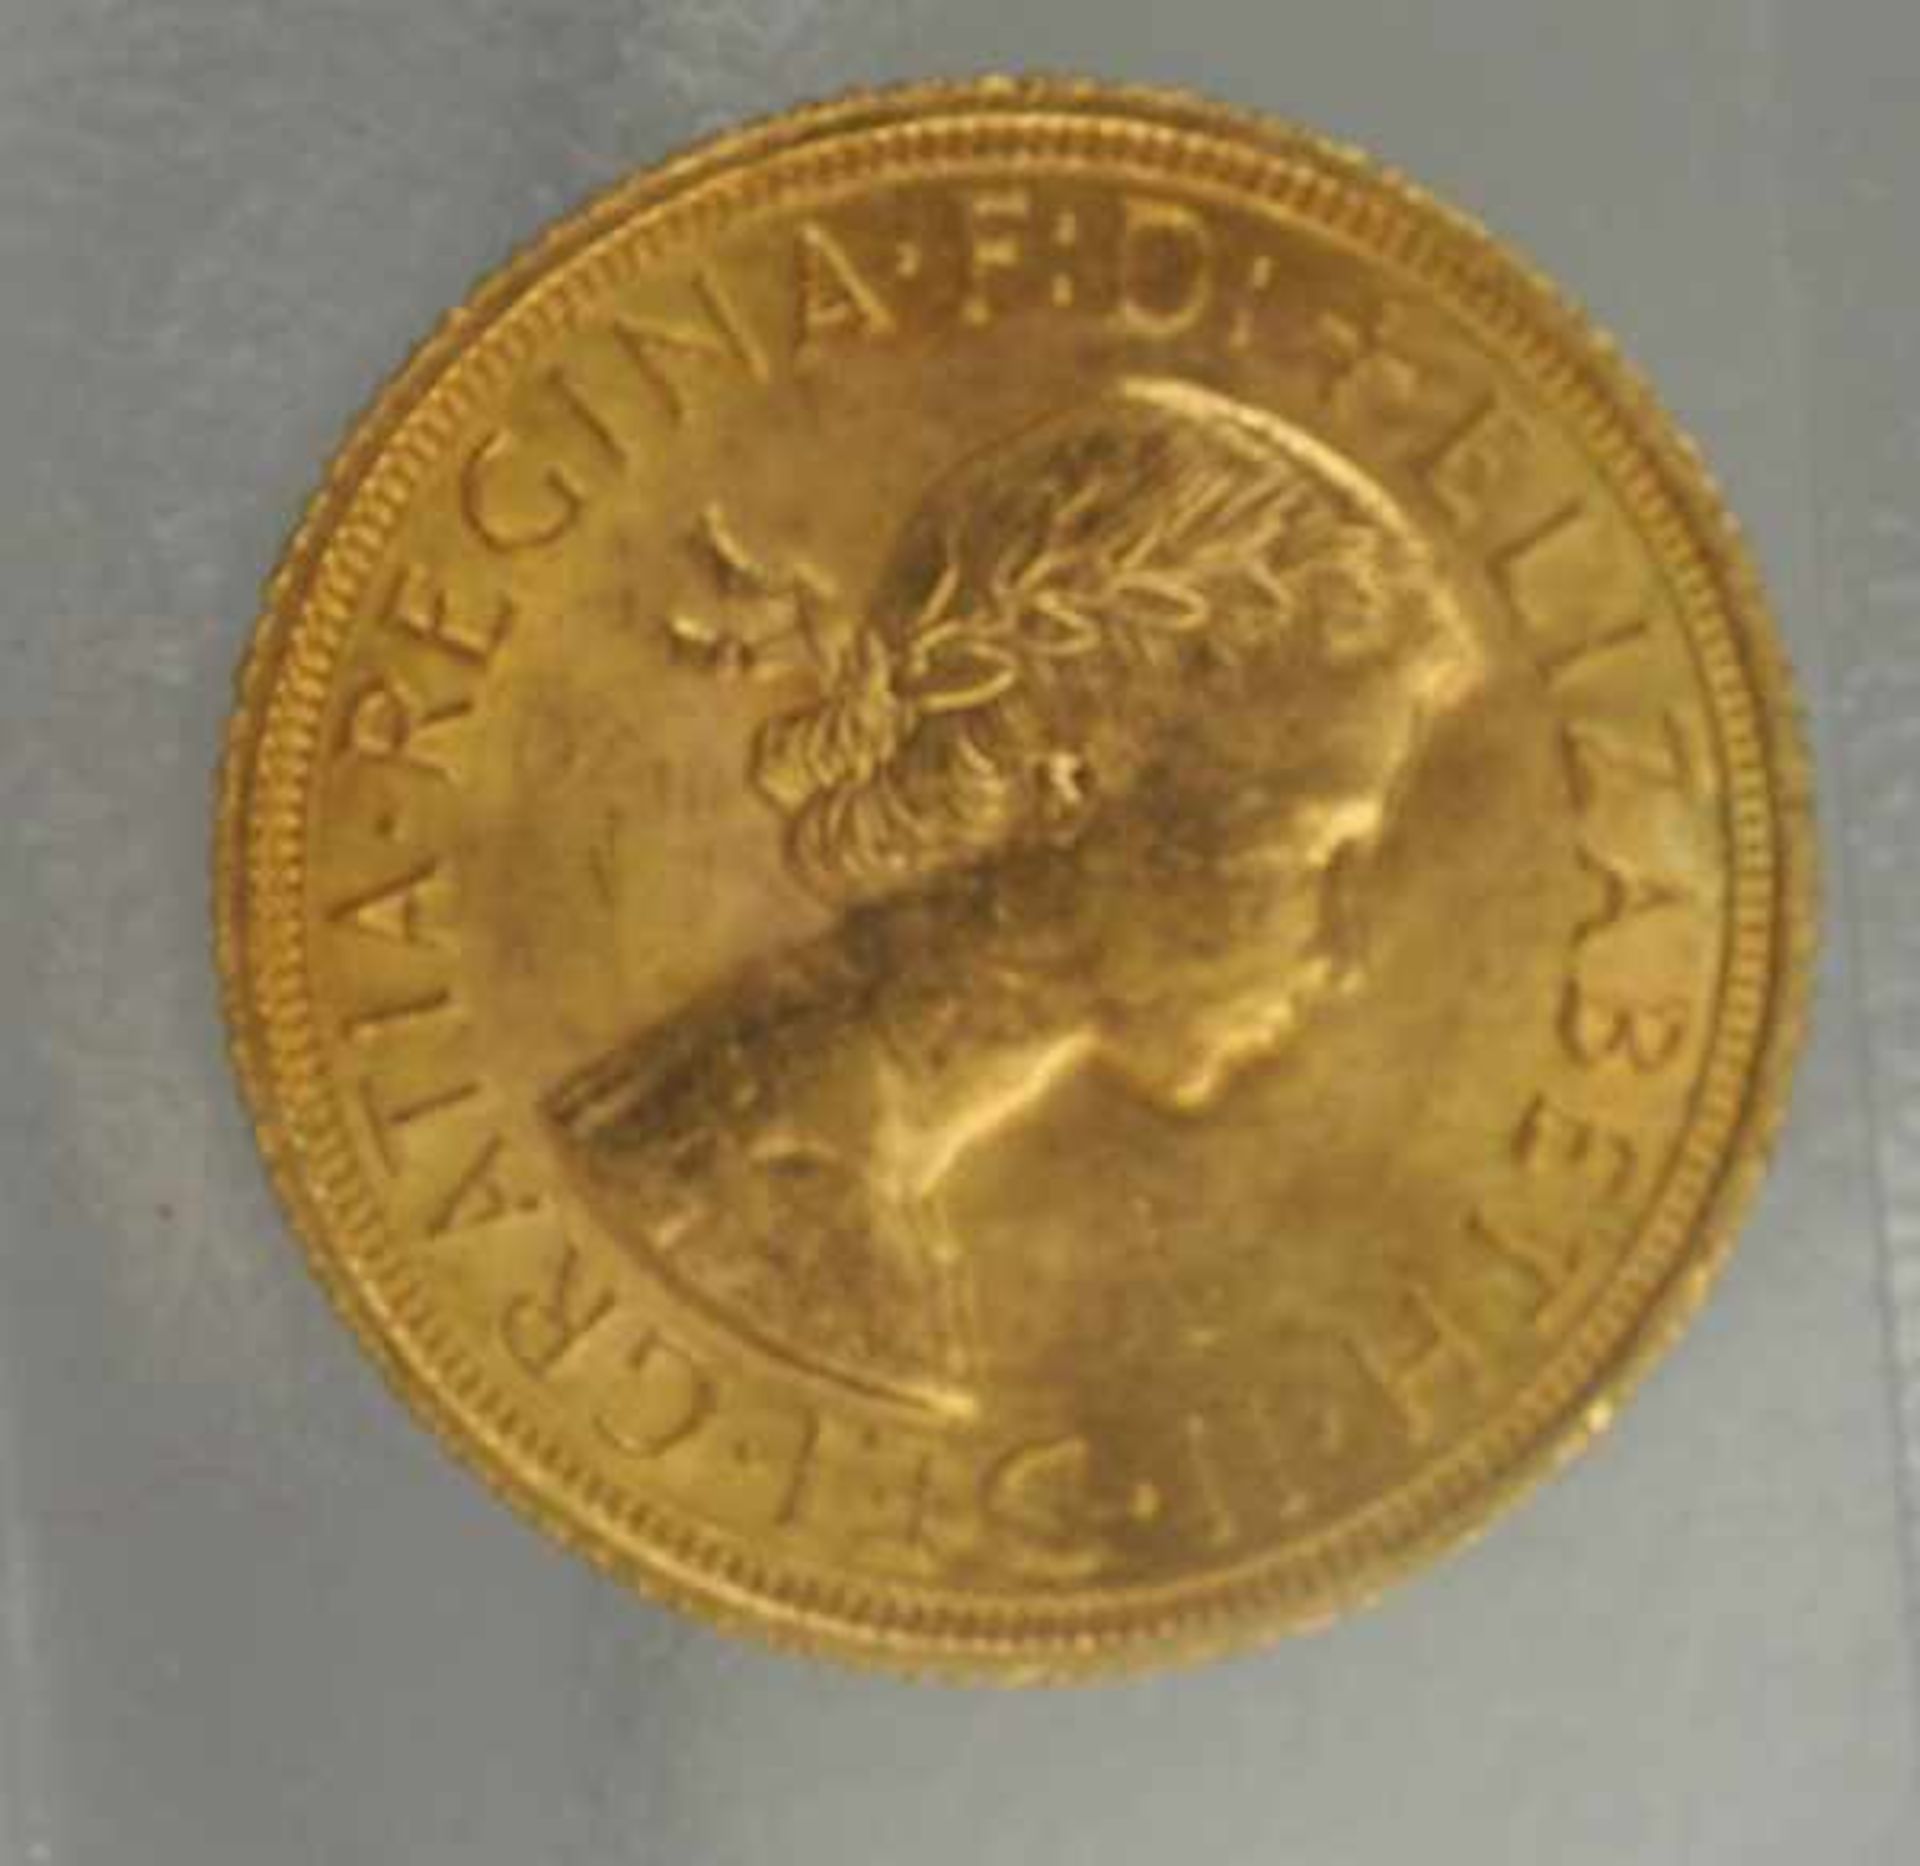 2 GOLDMÜNZEN 2 Rand Südafrika und England, Elisabeth 1962, gesamt 15,98g - Bild 2 aus 2